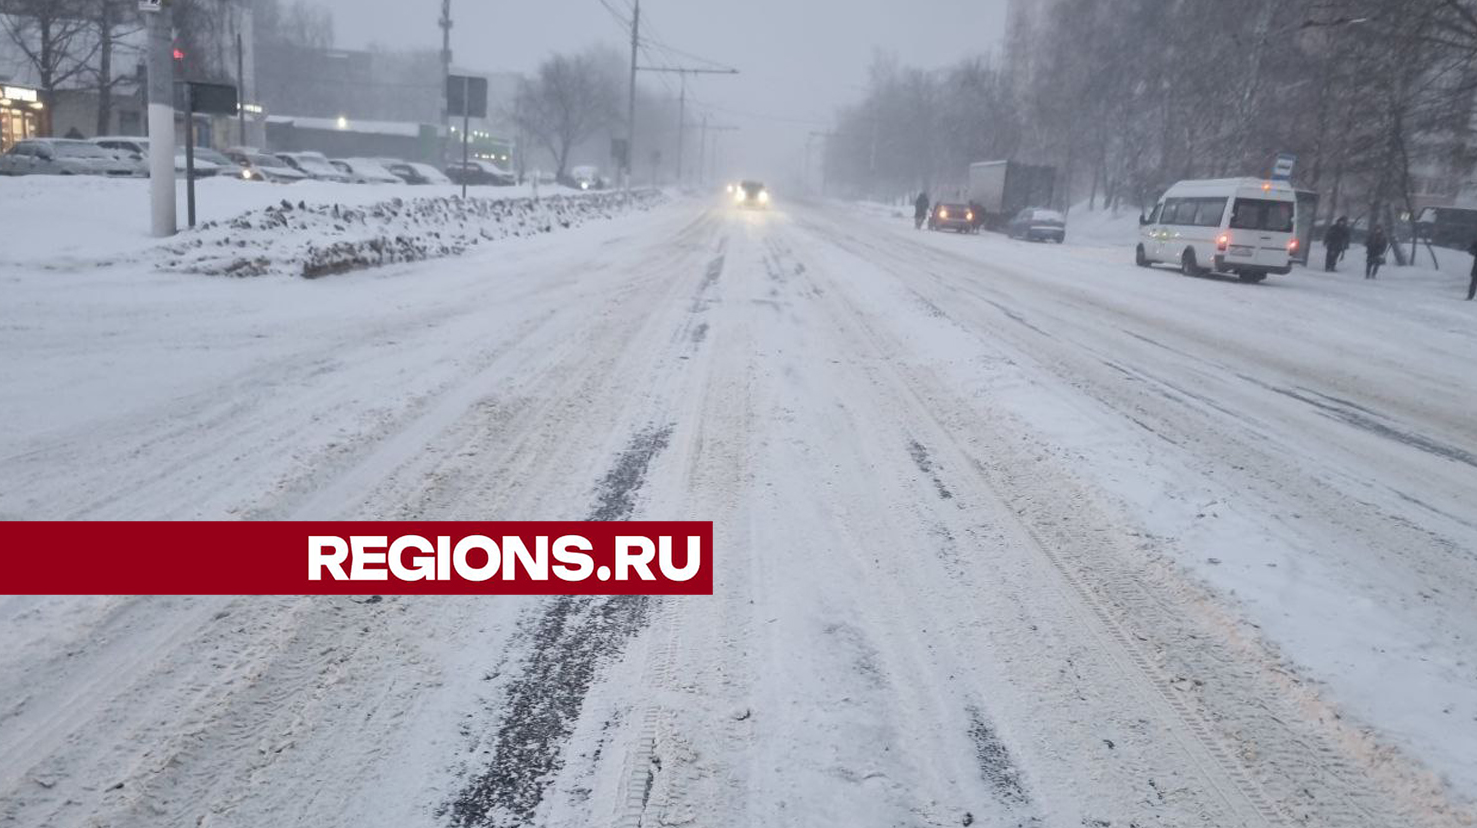 Массовое ДТП с пострадавшими произошло в Пушкинском округе из-за рекордного снегопада